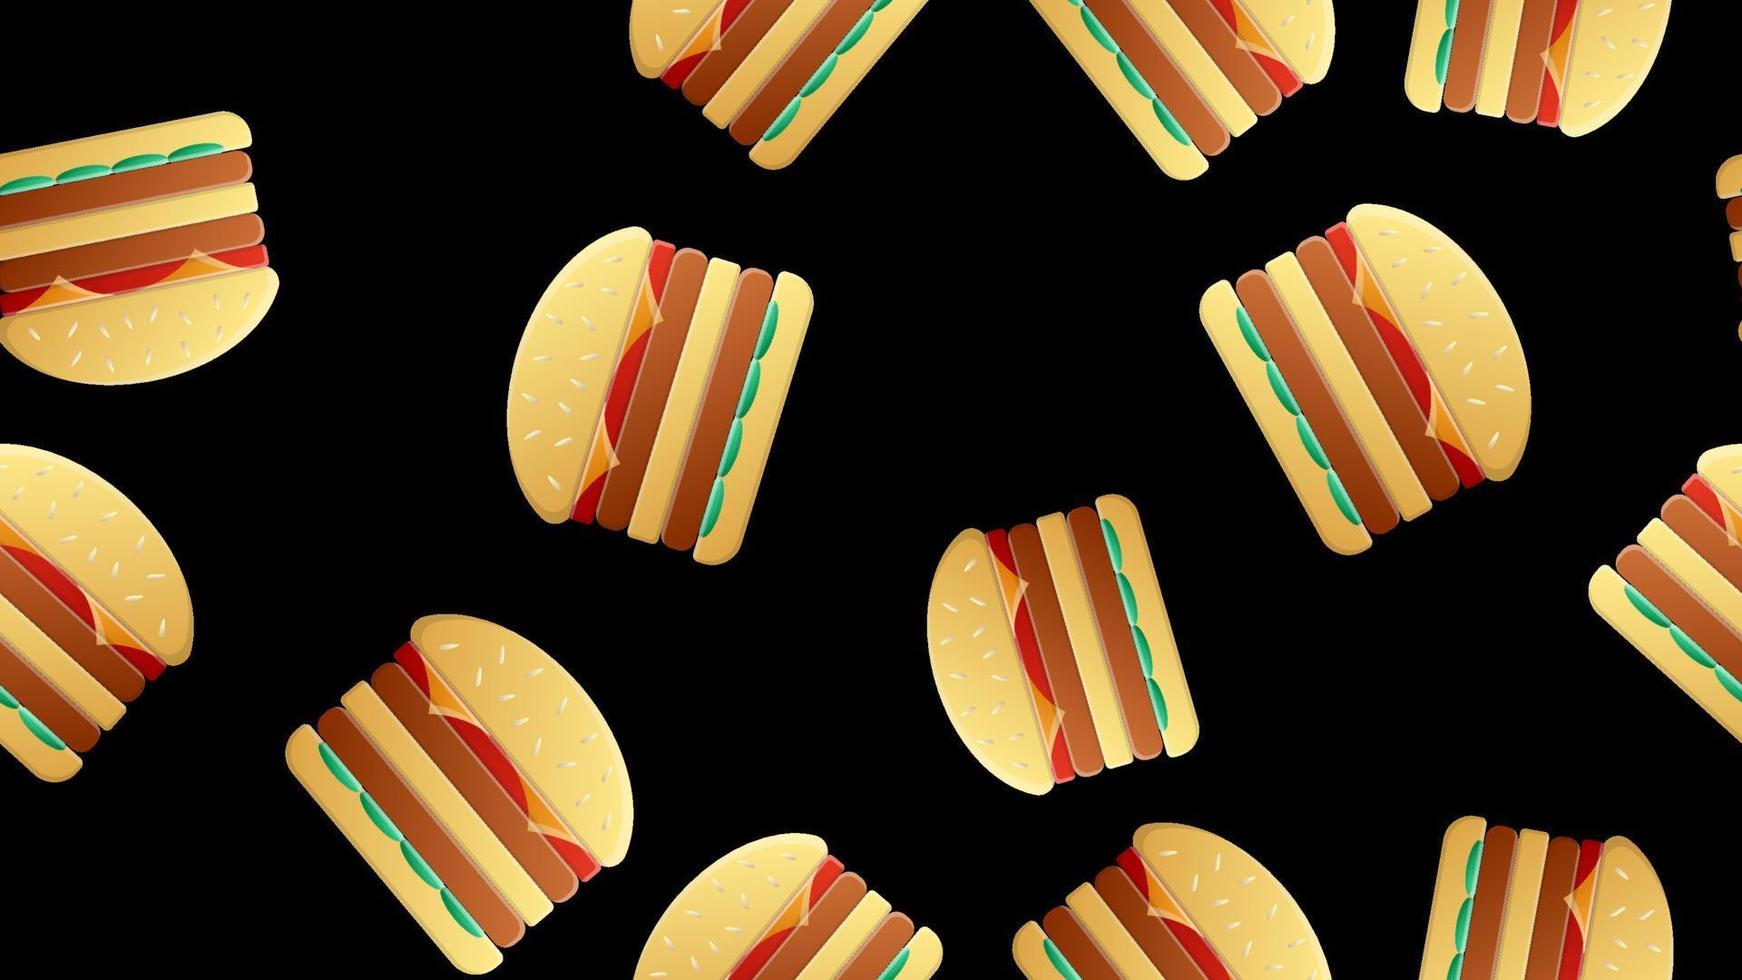 motif de hamburgers sur fond noir, illustration vectorielle. restauration rapide délicieuse. décoration de décor de cuisine. hamburgers colorés avec une garniture juteuse. double burger pour satisfaire la faim vecteur